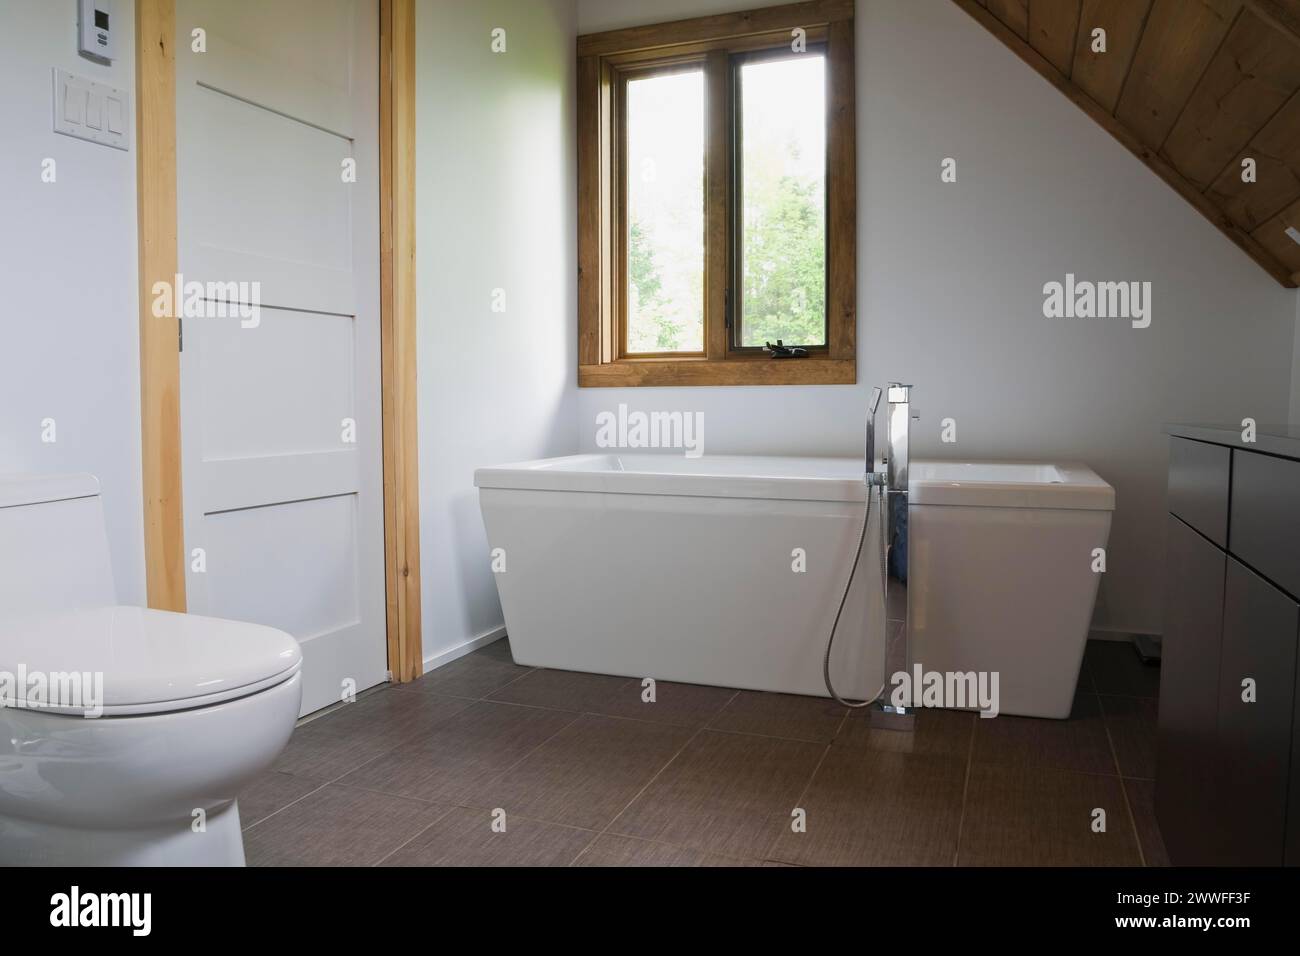 Salle de bains principale avec carrelage en céramique grise et toilettes en porcelaine blanche et baignoire autoportante à l'étage à l'intérieur de la maison en rondins de style contemporain Banque D'Images